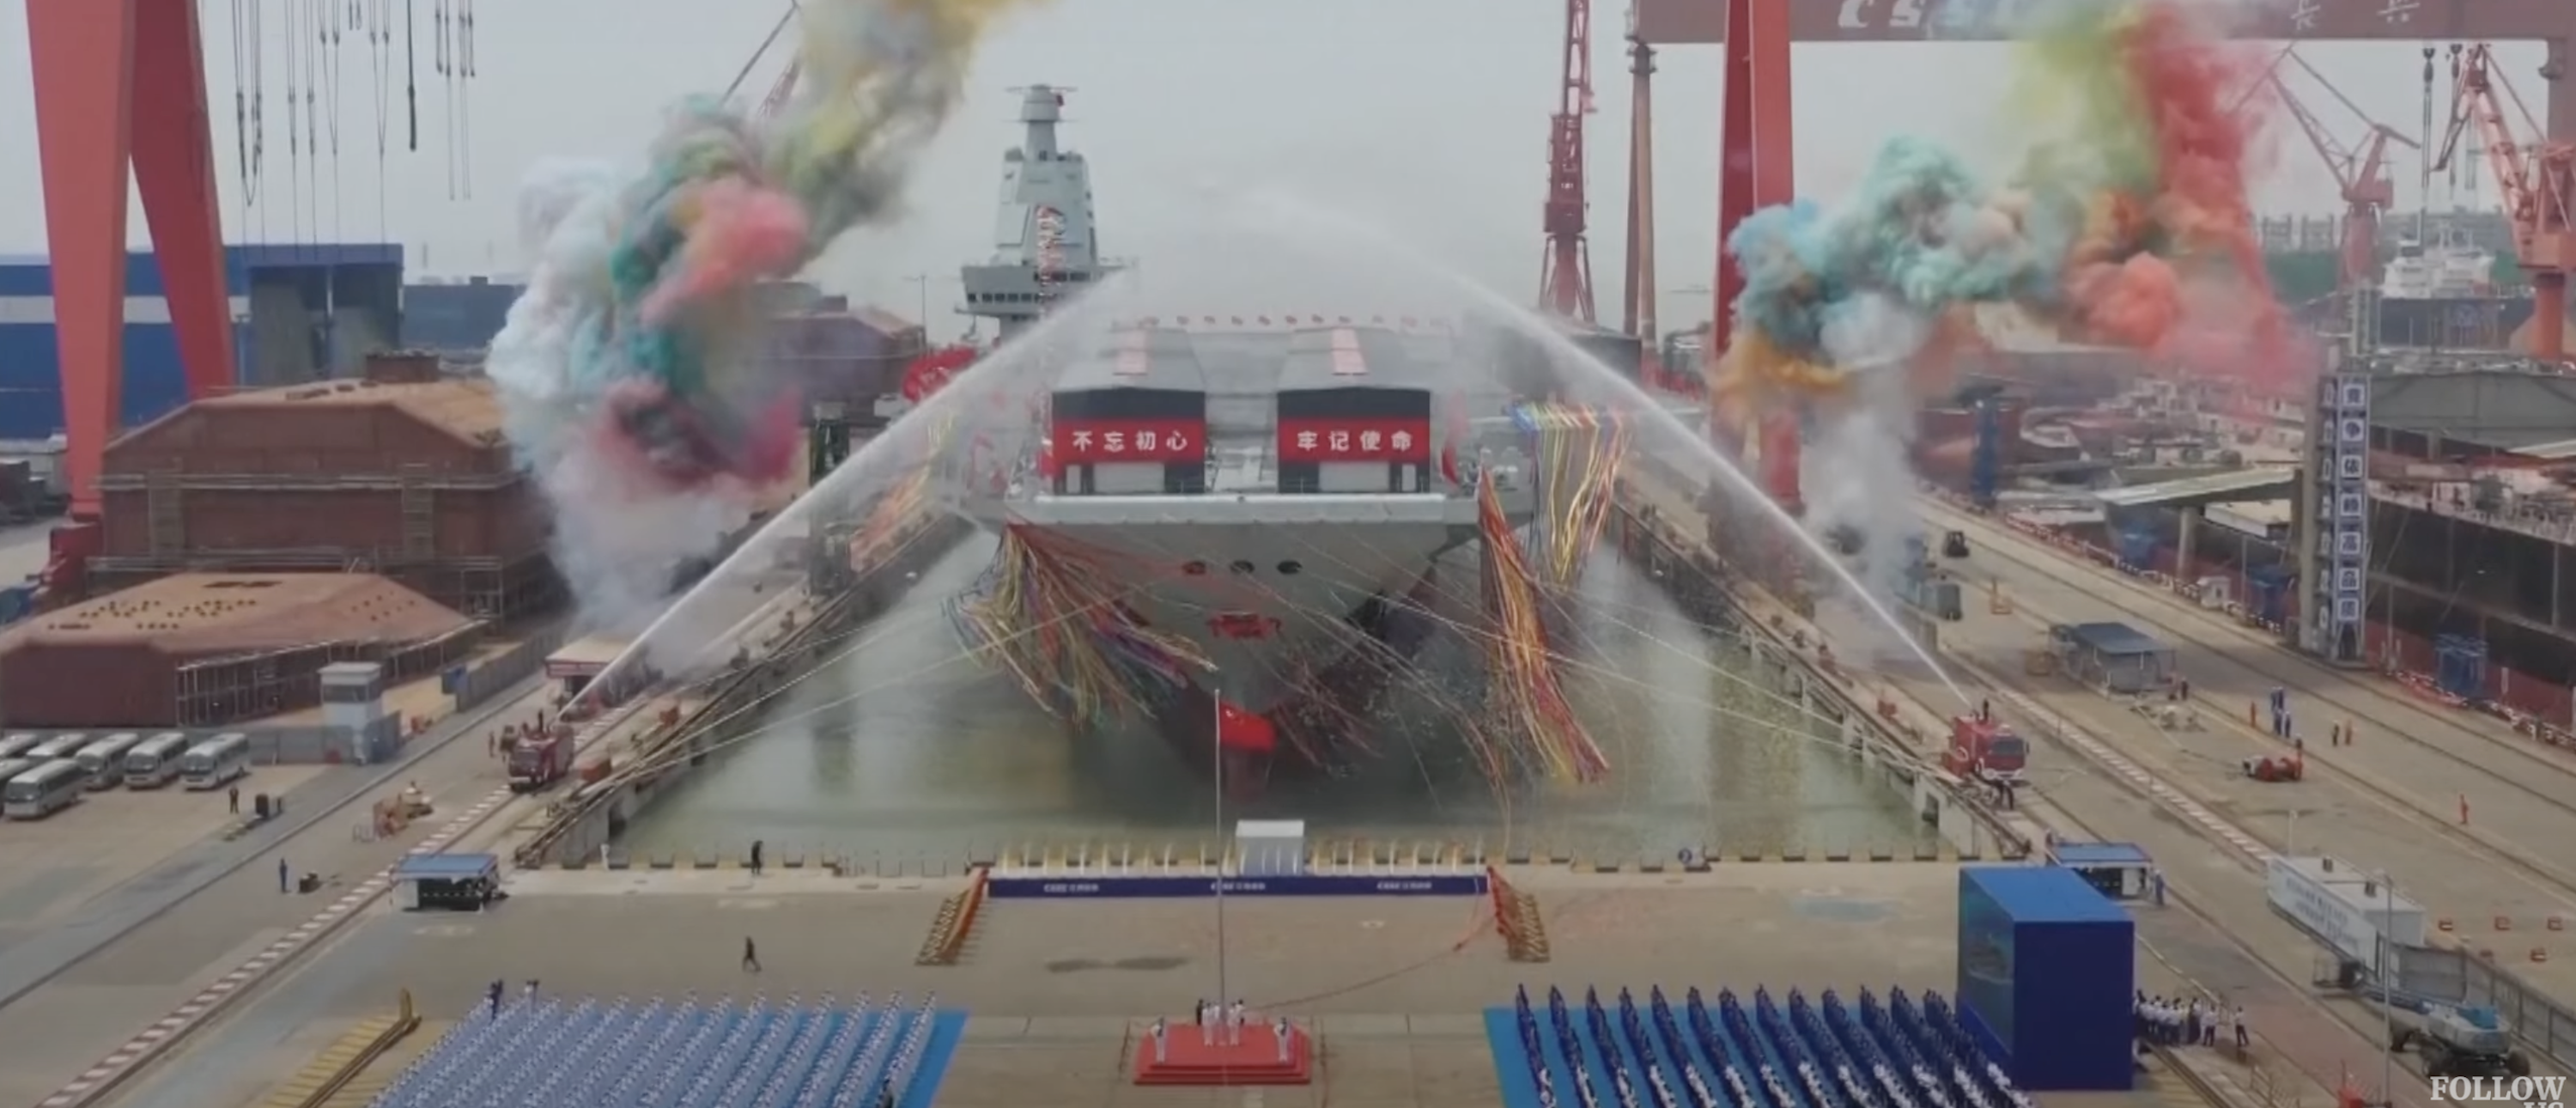 China unveiled its third aircraft carrier, Fujian, at its Shanghai harbor, according to Chinese state-run media. [Screenshot/YouTube/SouthChinaMorningPost]